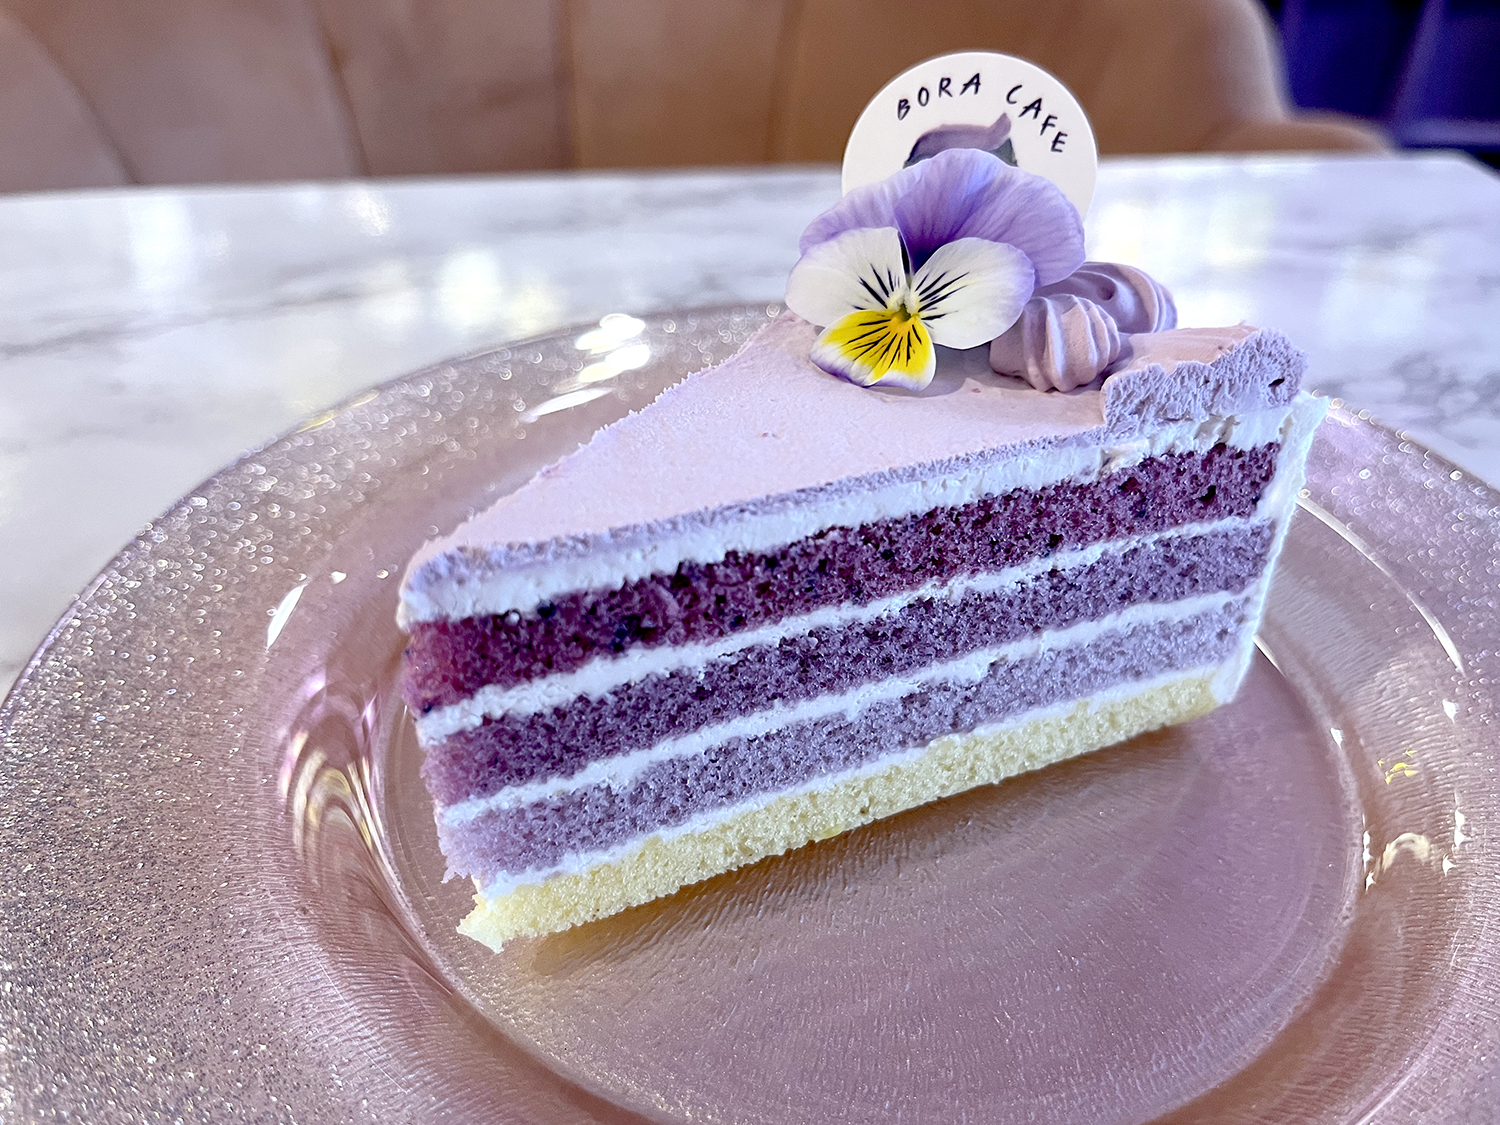 断面が美しいケーキ。上の濃い紫から少しずつ淡い色になっている。